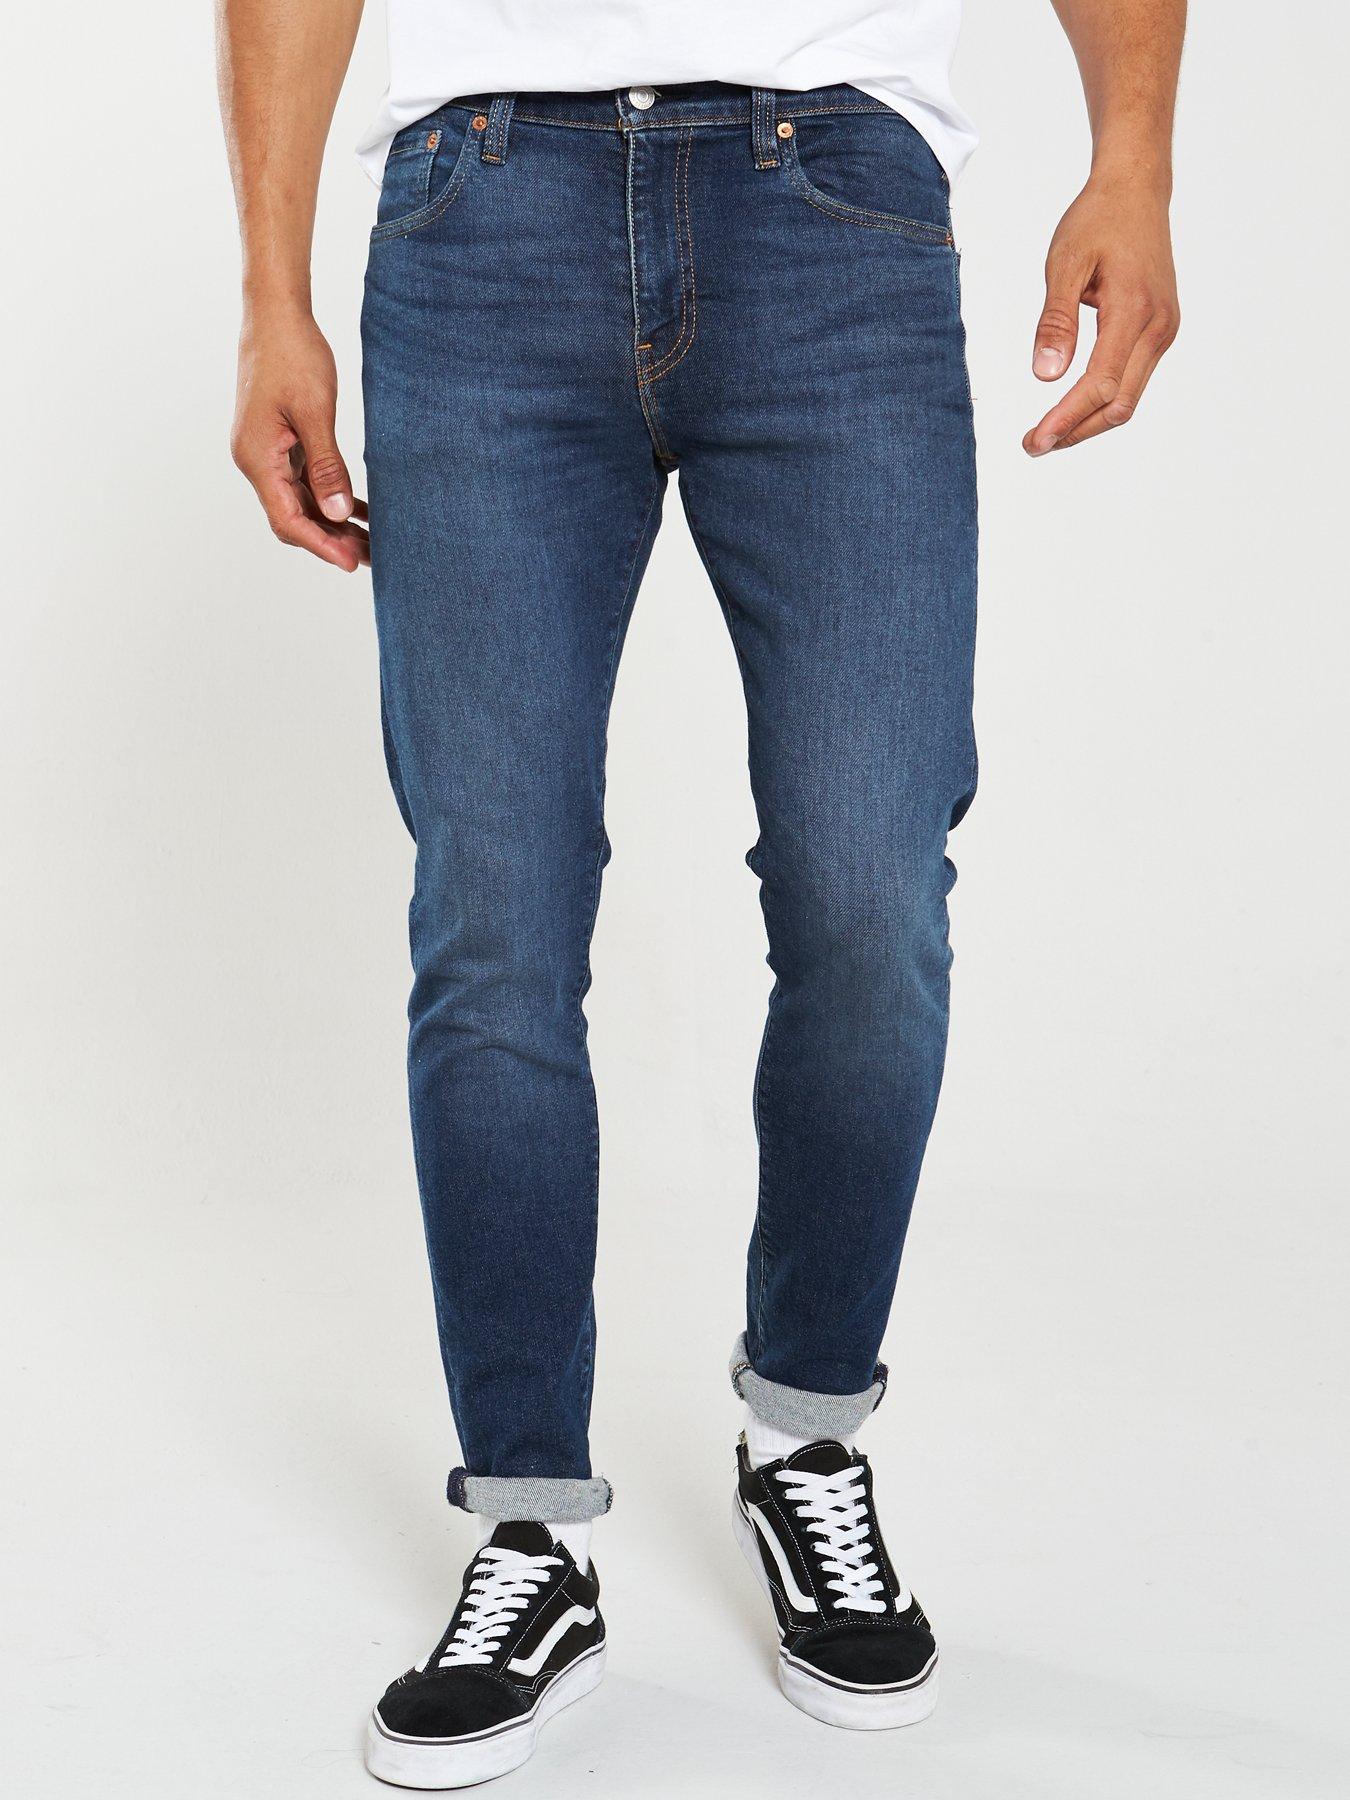 levis 512 mens jeans